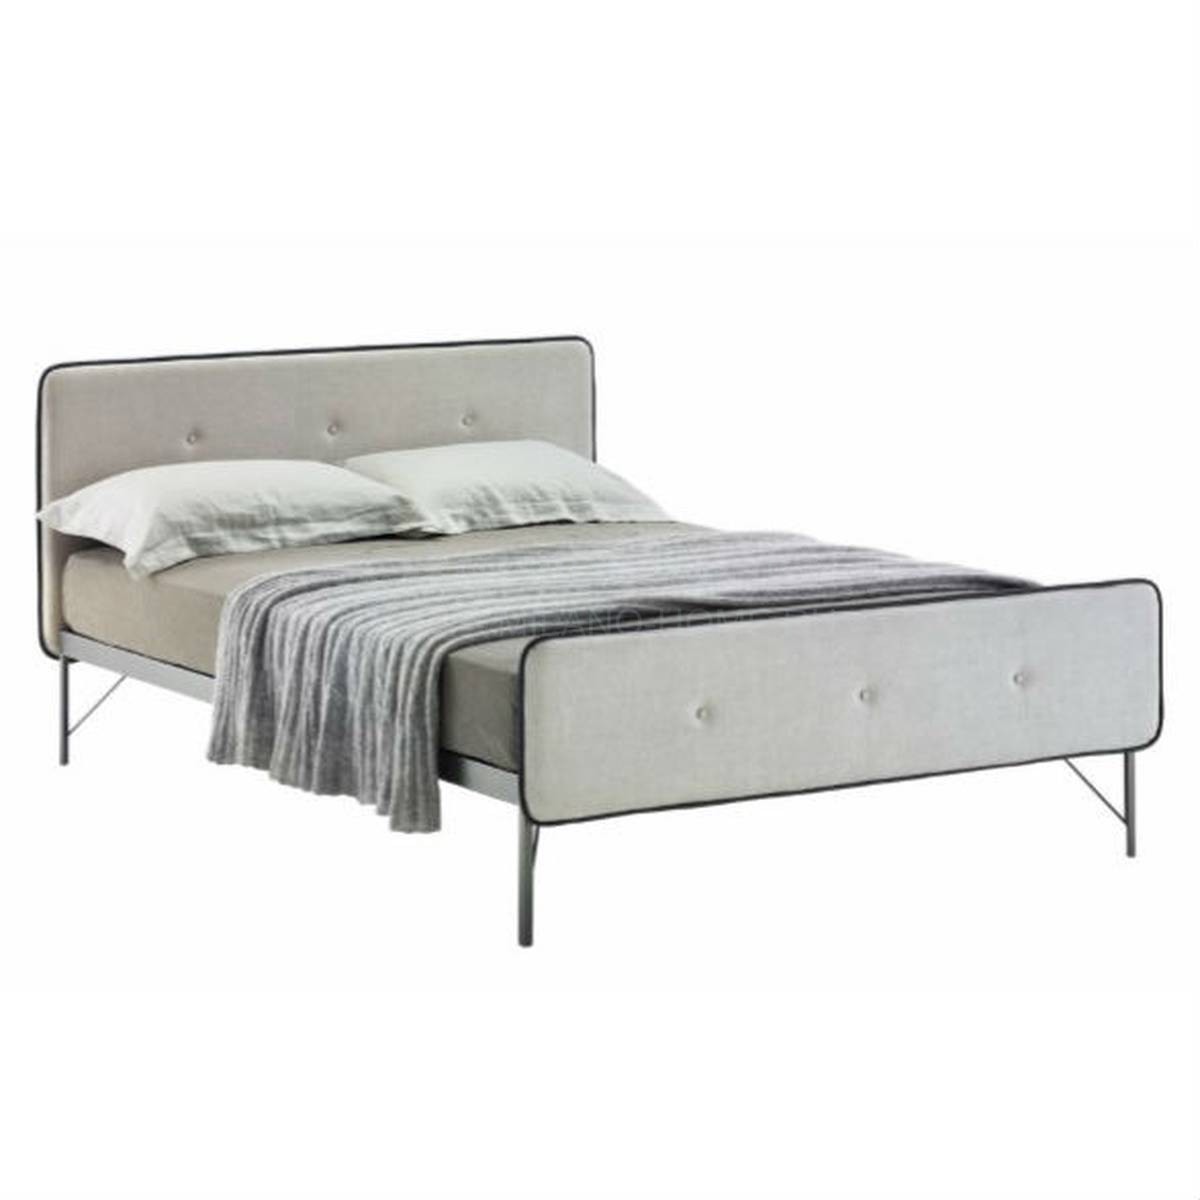 Кровать с мягким изголовьем Hotelroyal из Италии фабрики ZANOTTA